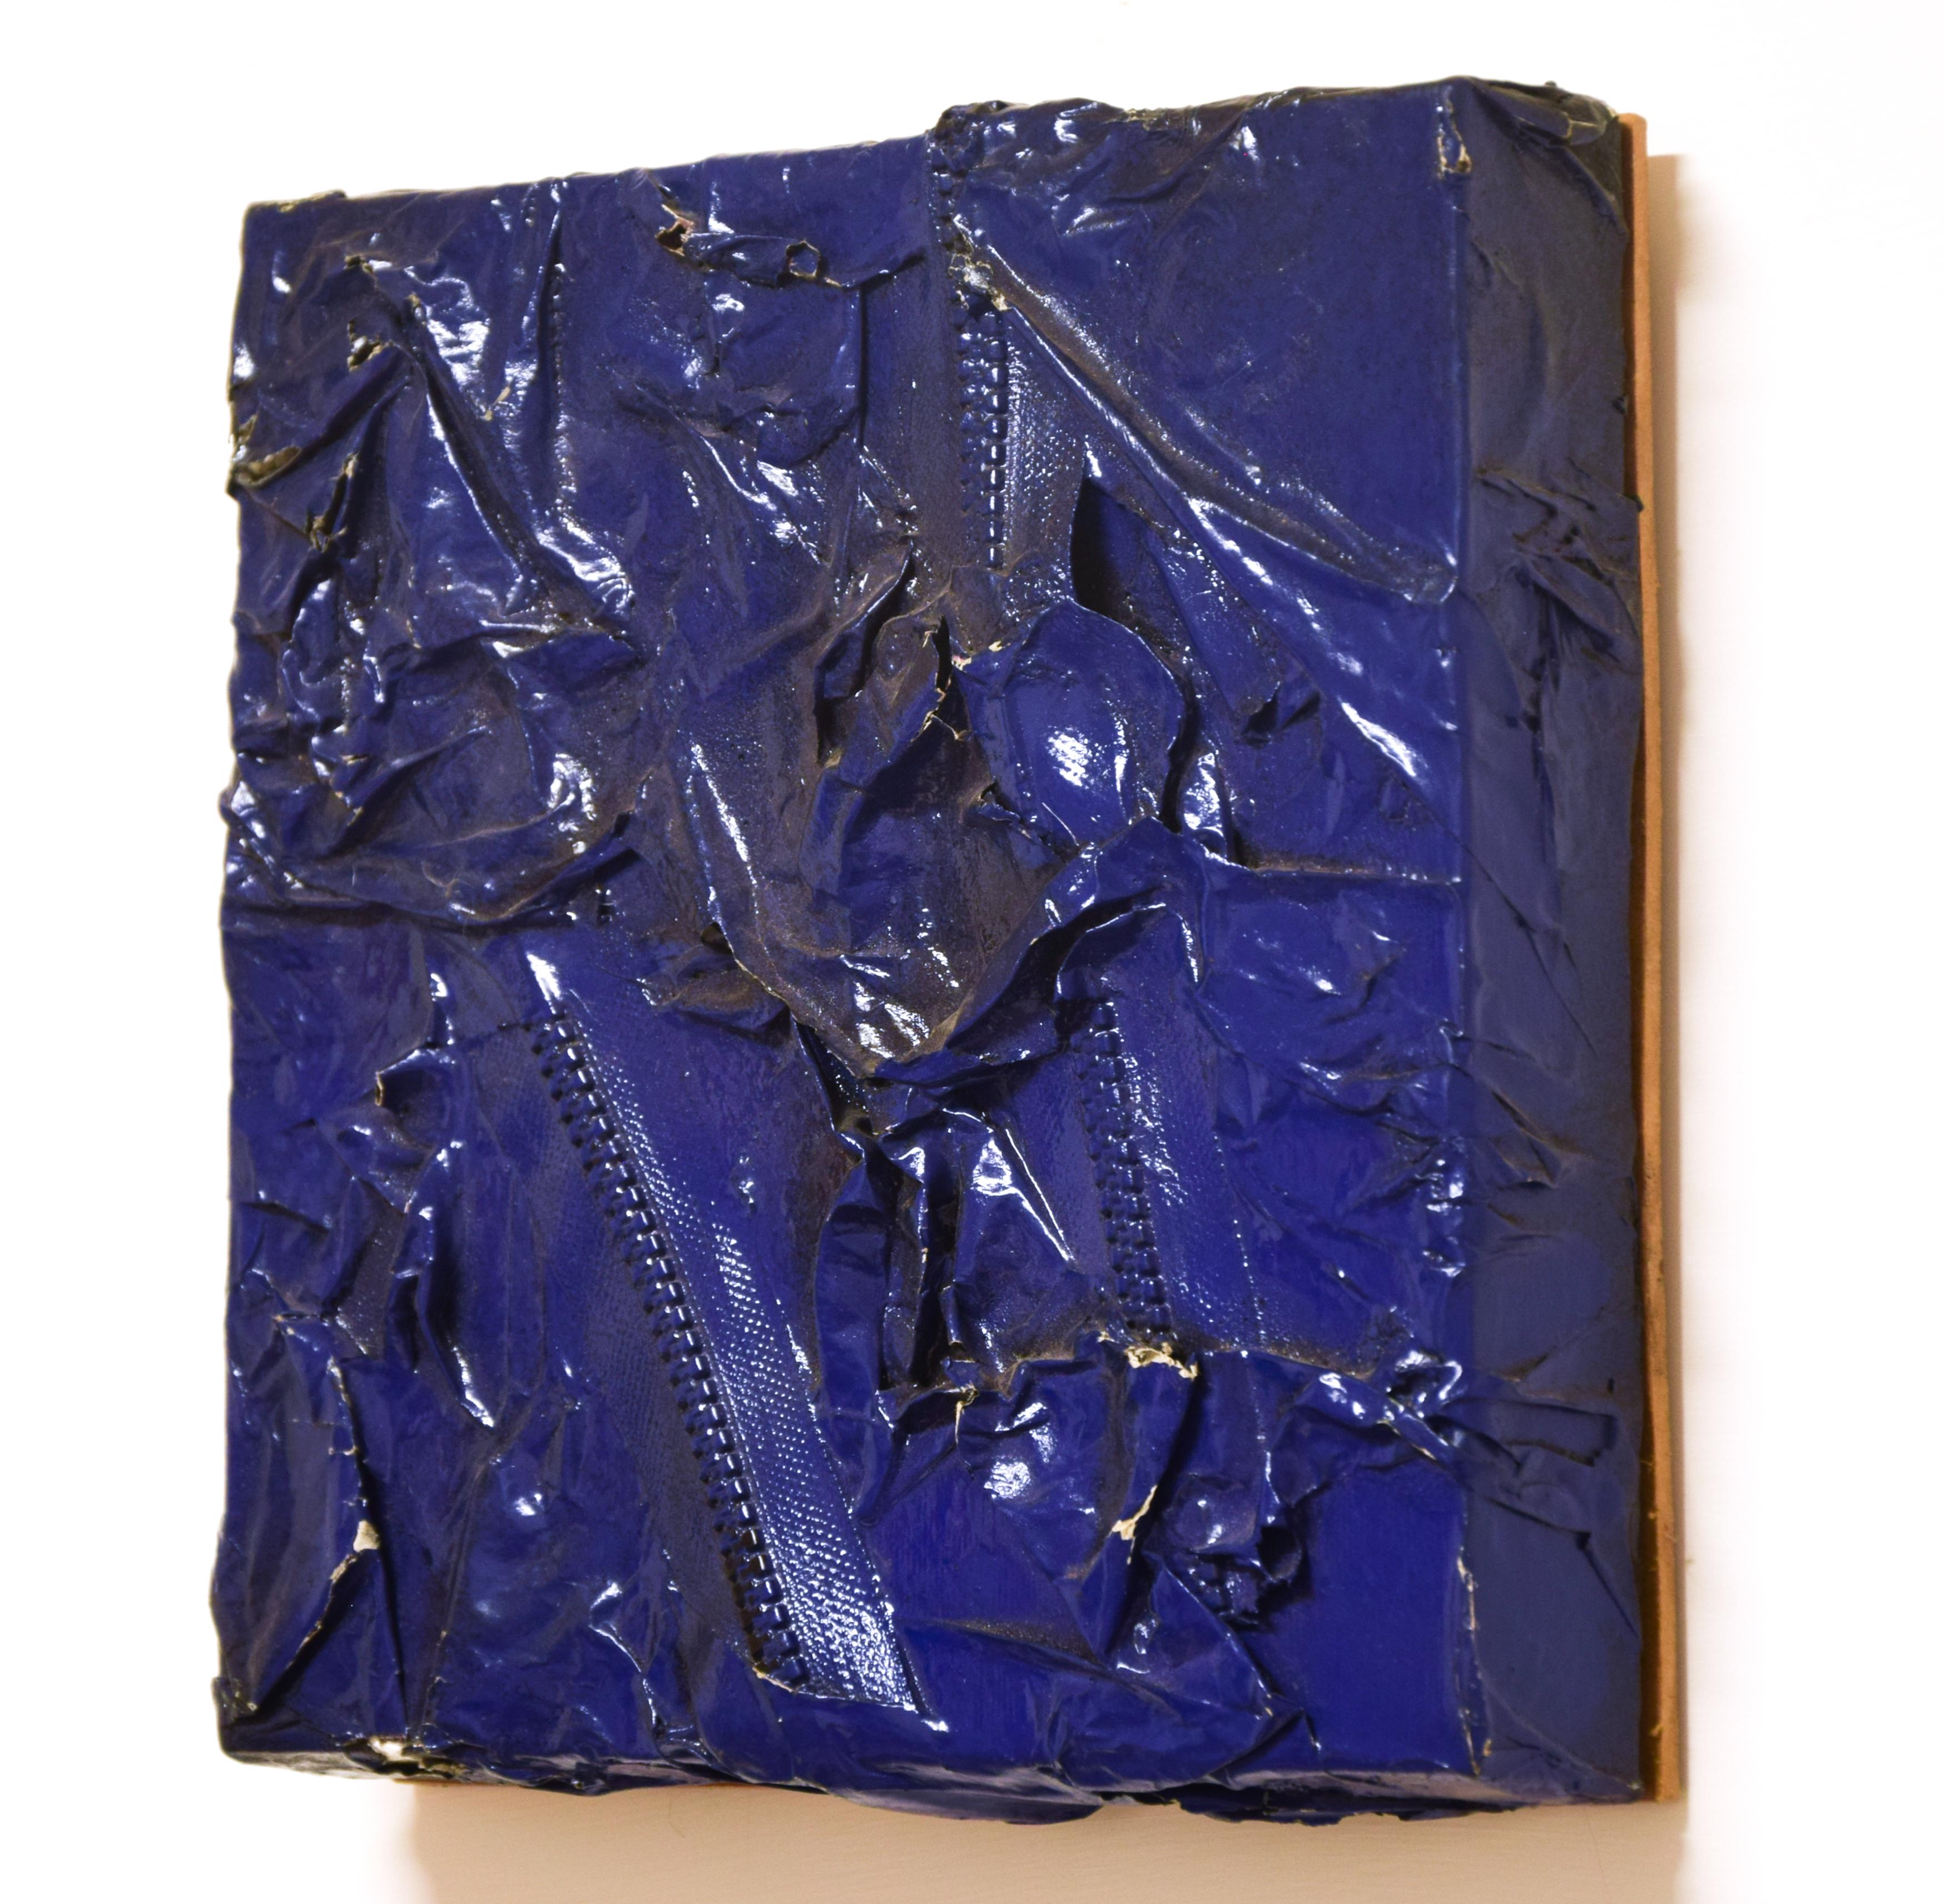 Bleu foncé  Acrylique, émail et collage à fermeture éclair sur papier - 2010 - Painting de Charlotte Ritzow